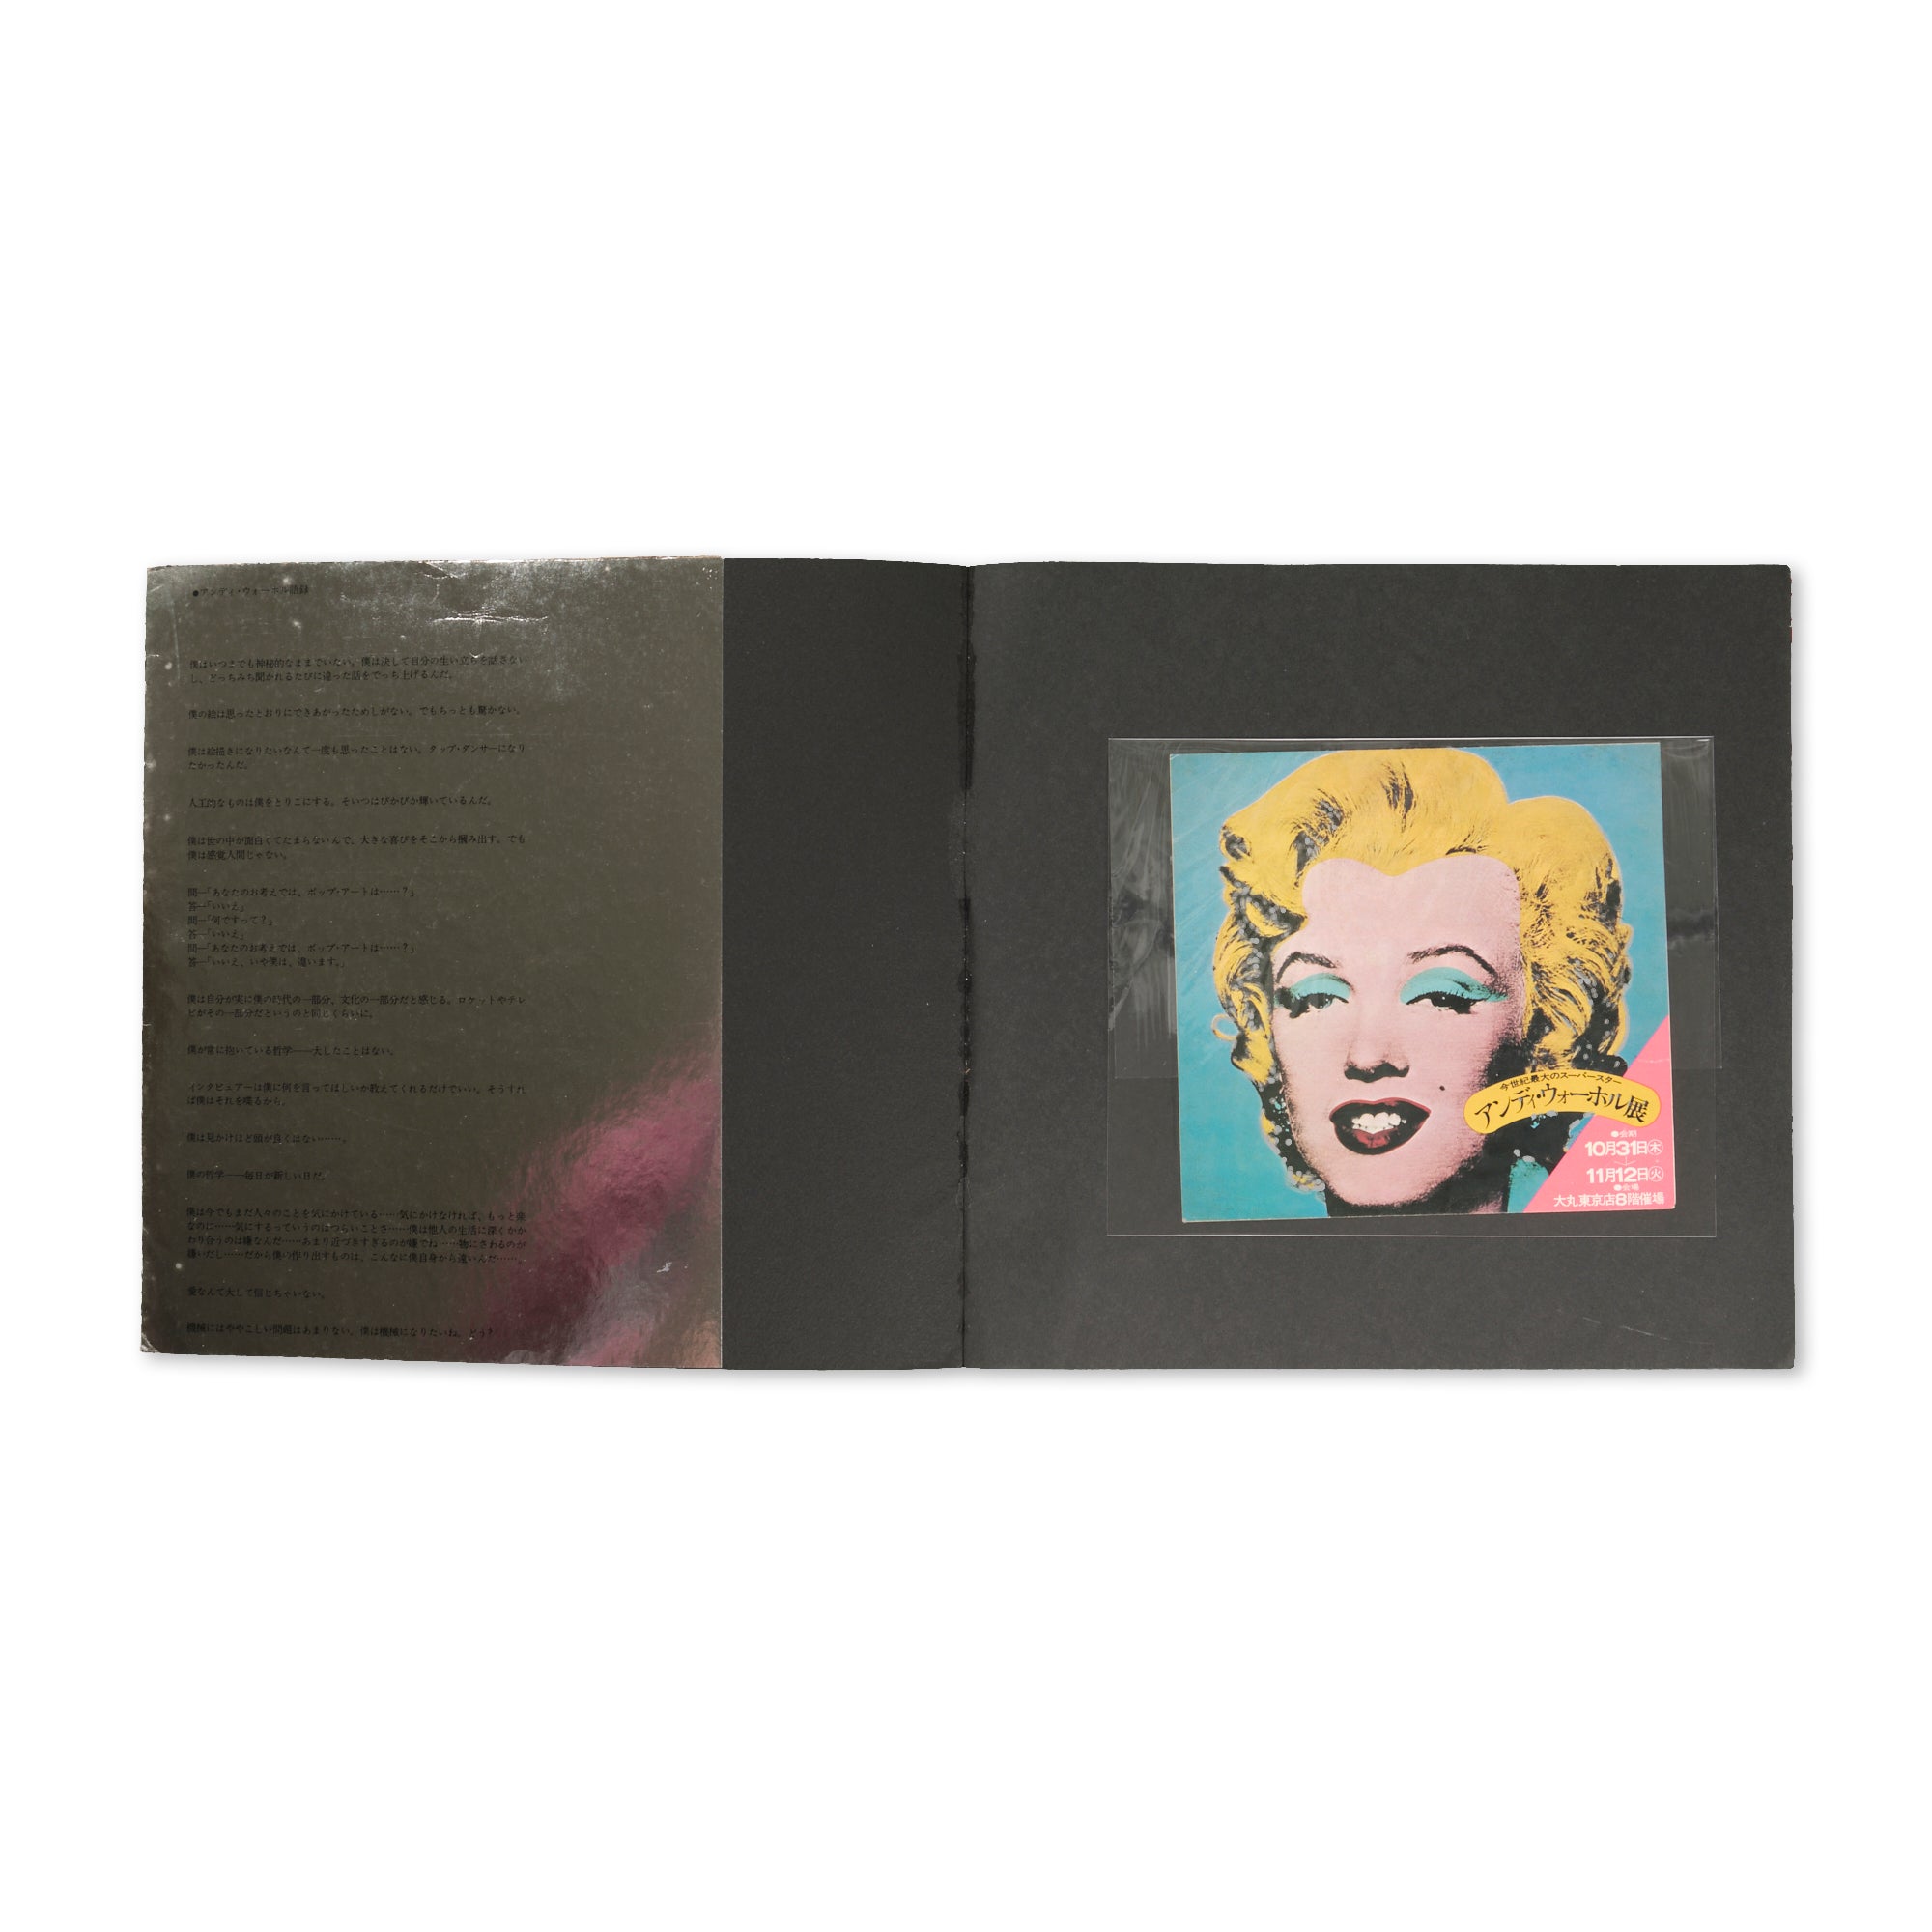 Andy Warhol - Tokyo Catalogue